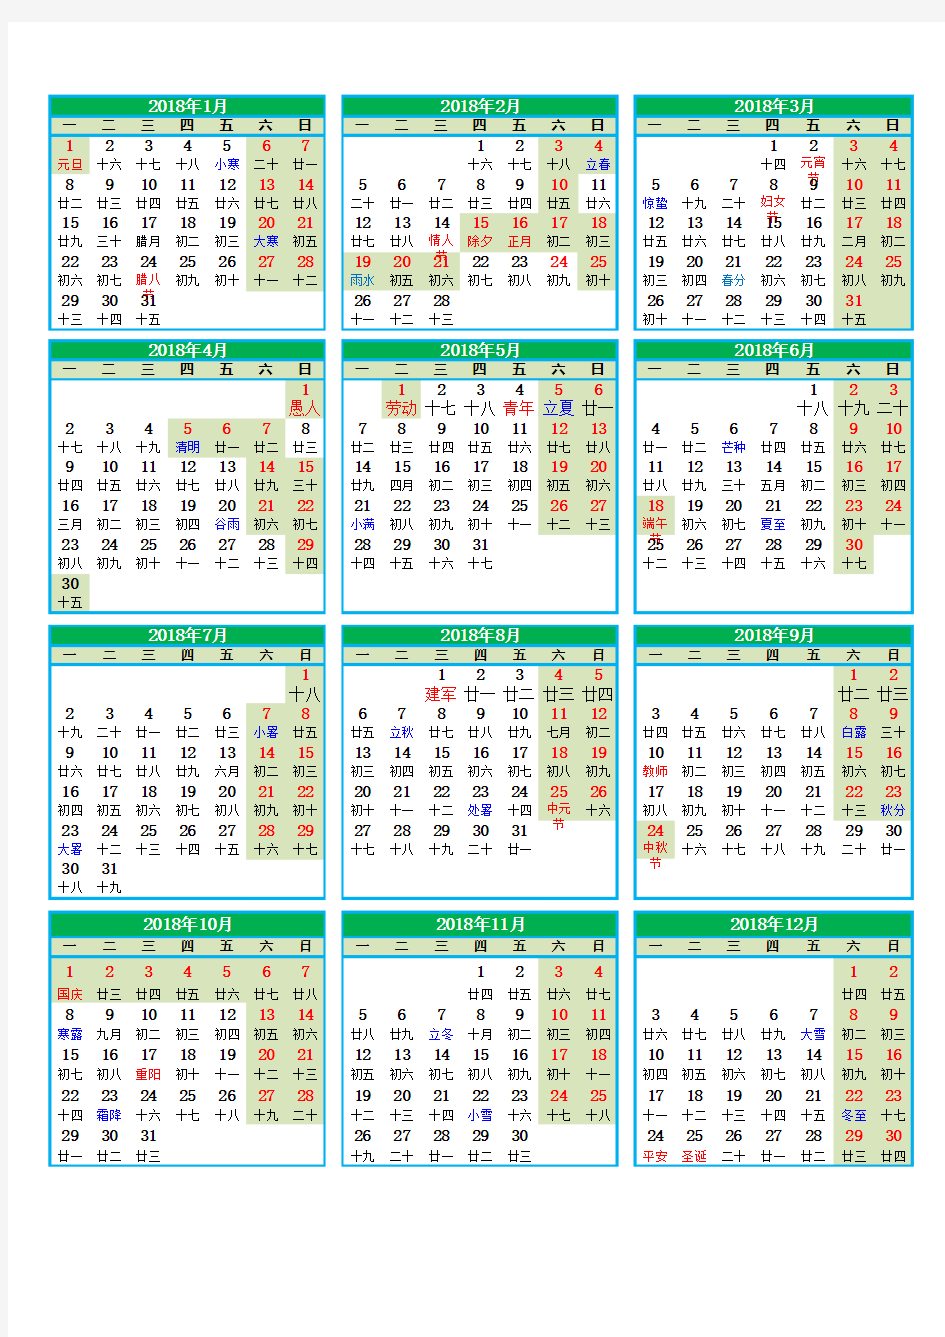 2018年日历表(节假日)